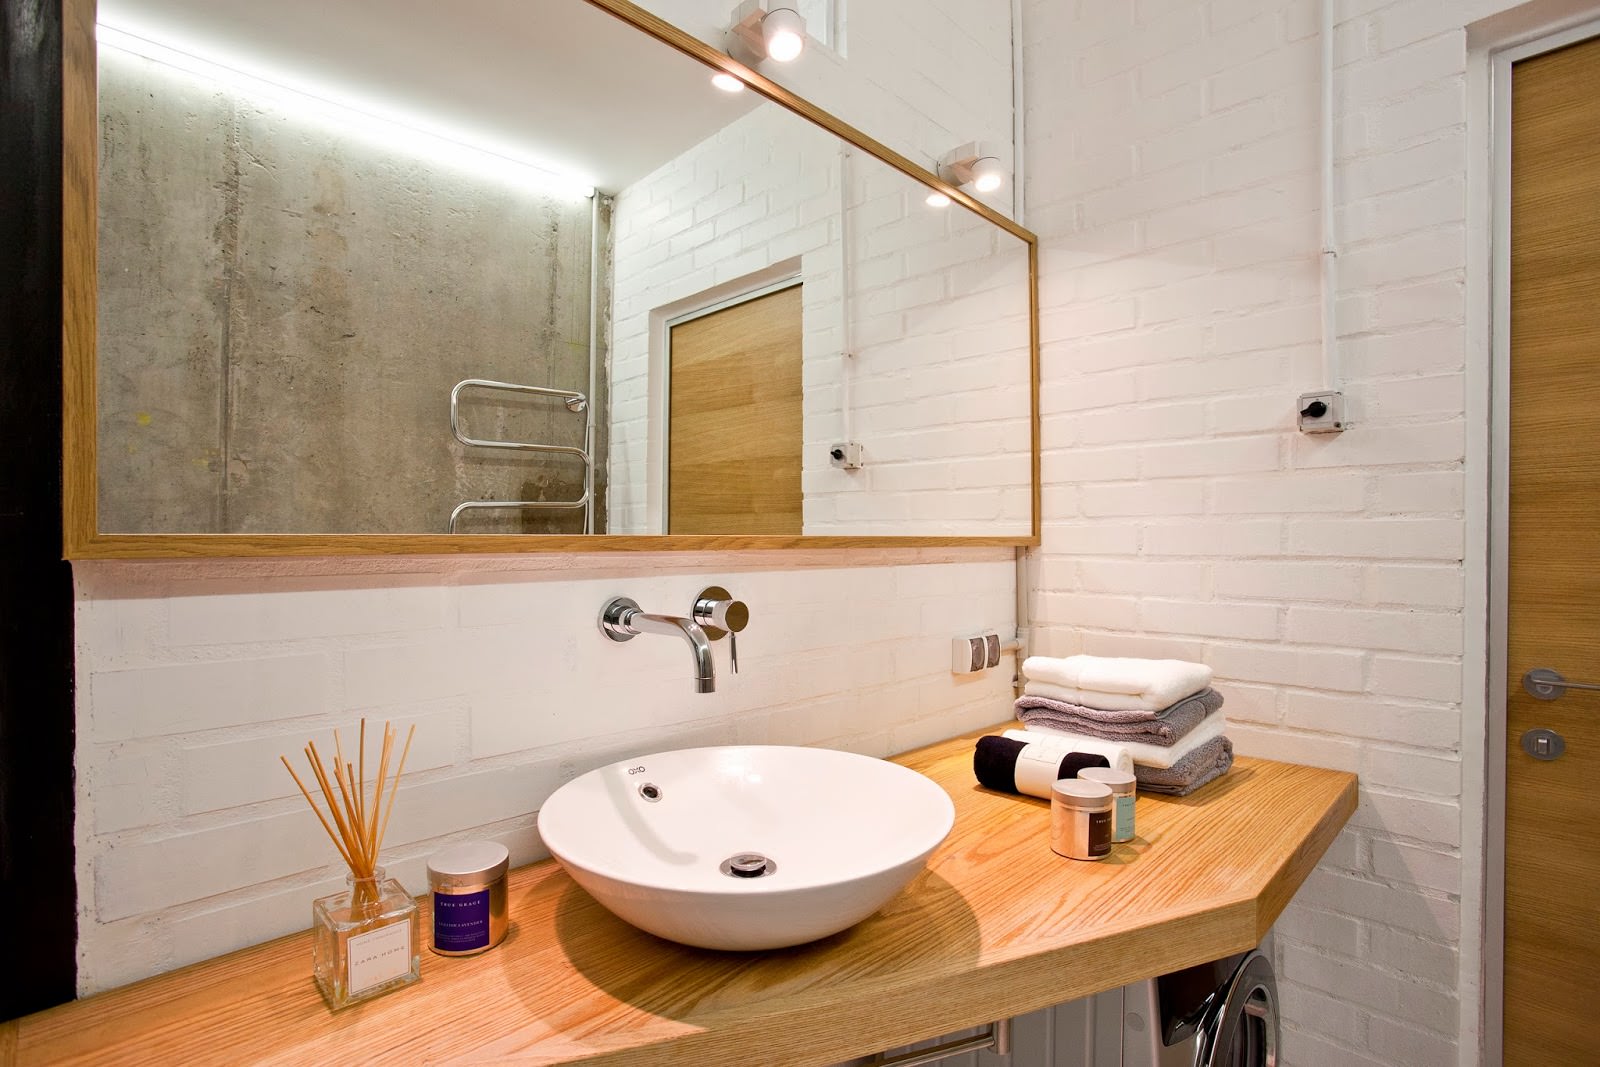 Beton în interiorul unui apartament creativ: baie